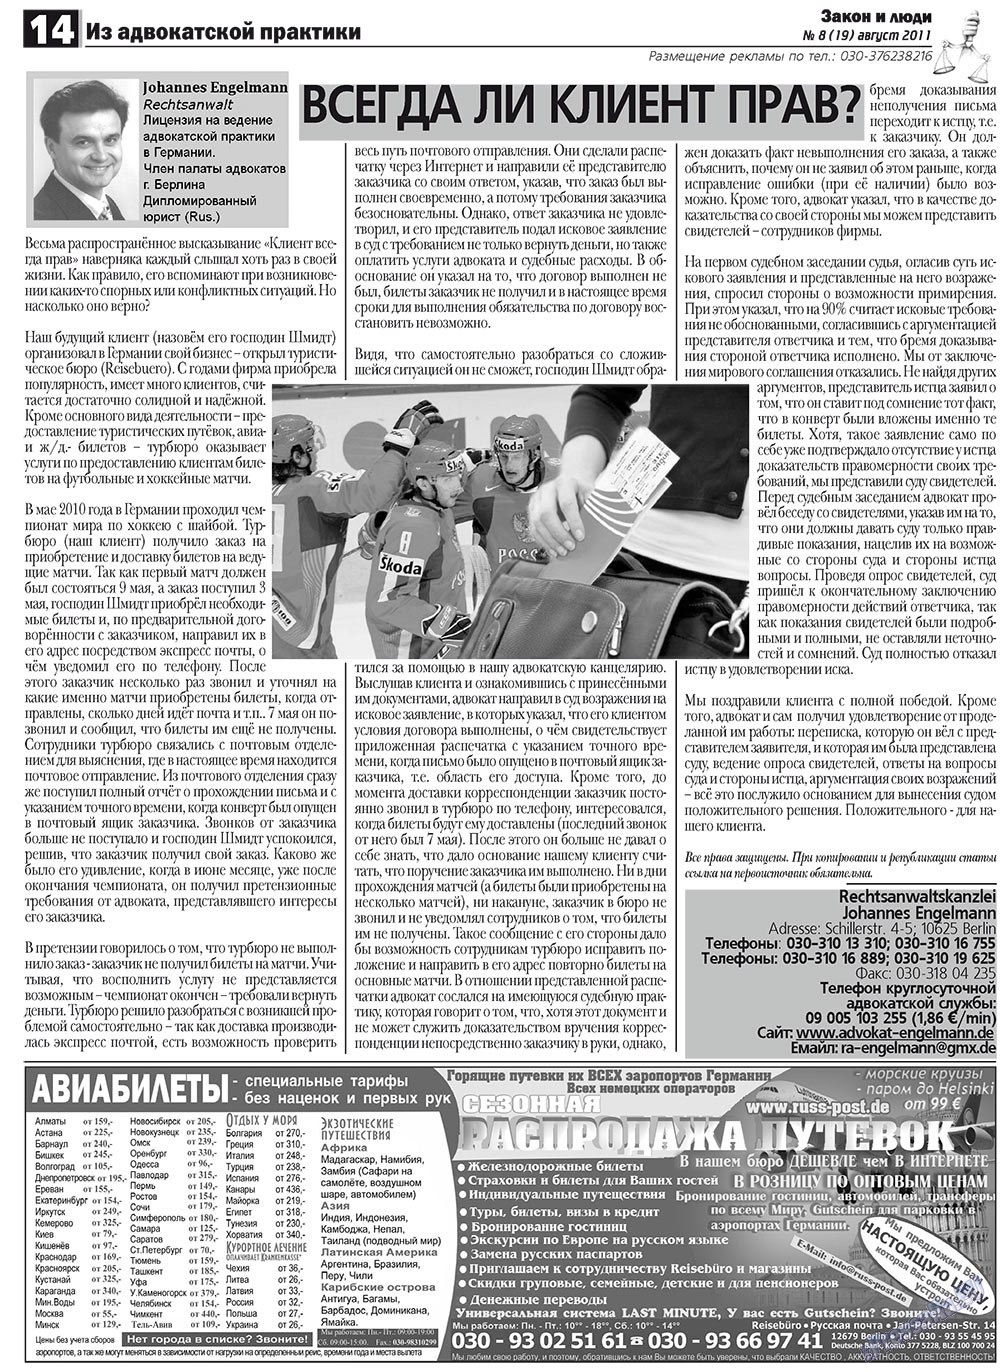 Закон и люди, газета. 2011 №8 стр.14